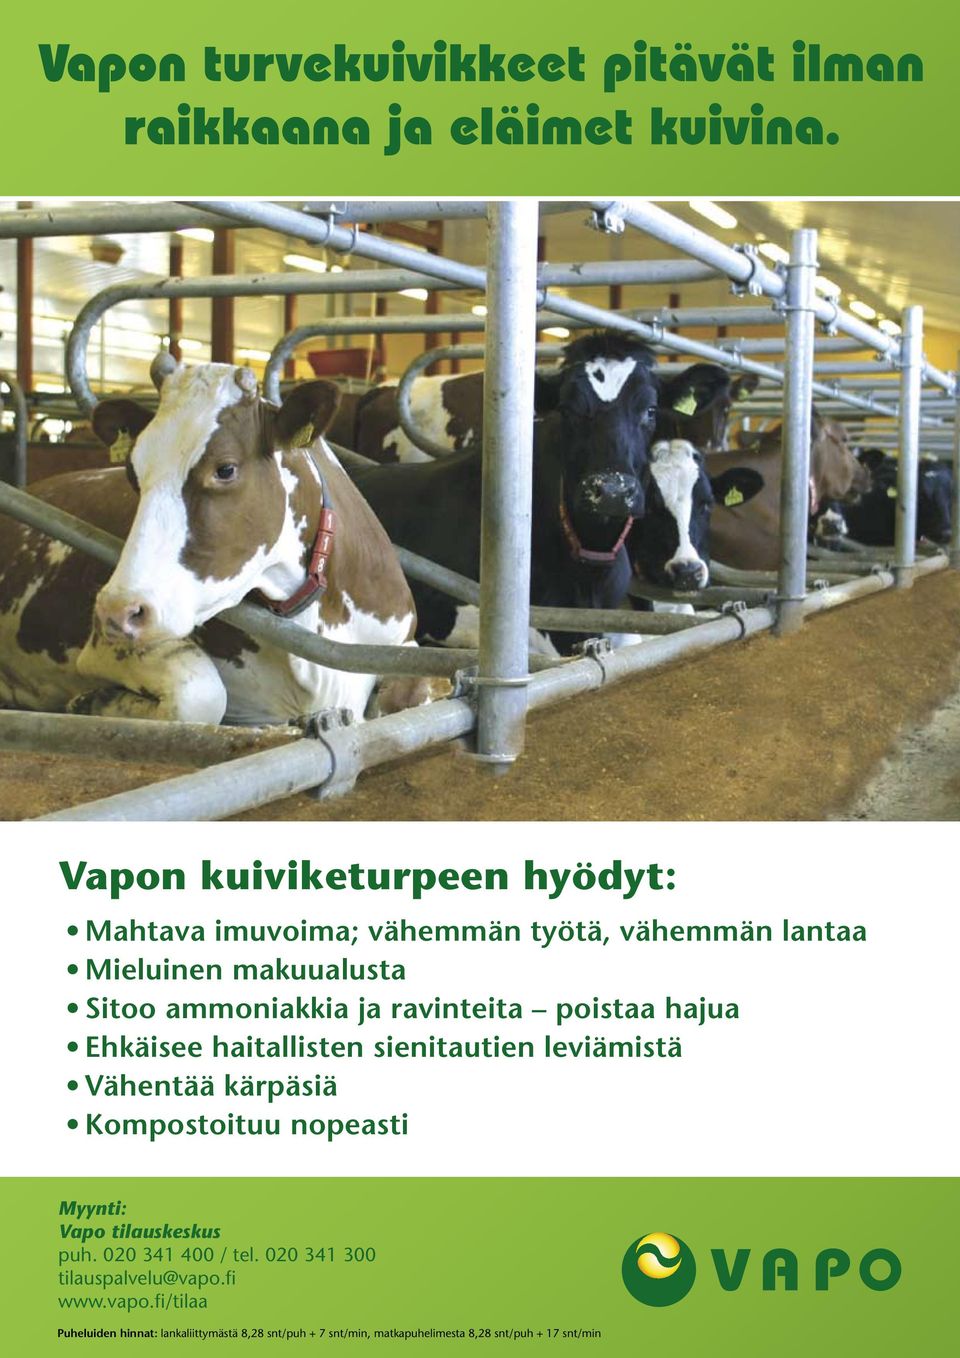 Kompostoituu nopeasti Myynti: Vapo tilauskeskus puh. 020 341 400 / tel. 020 341 300 tilauspalvelu@vapo.fi www.